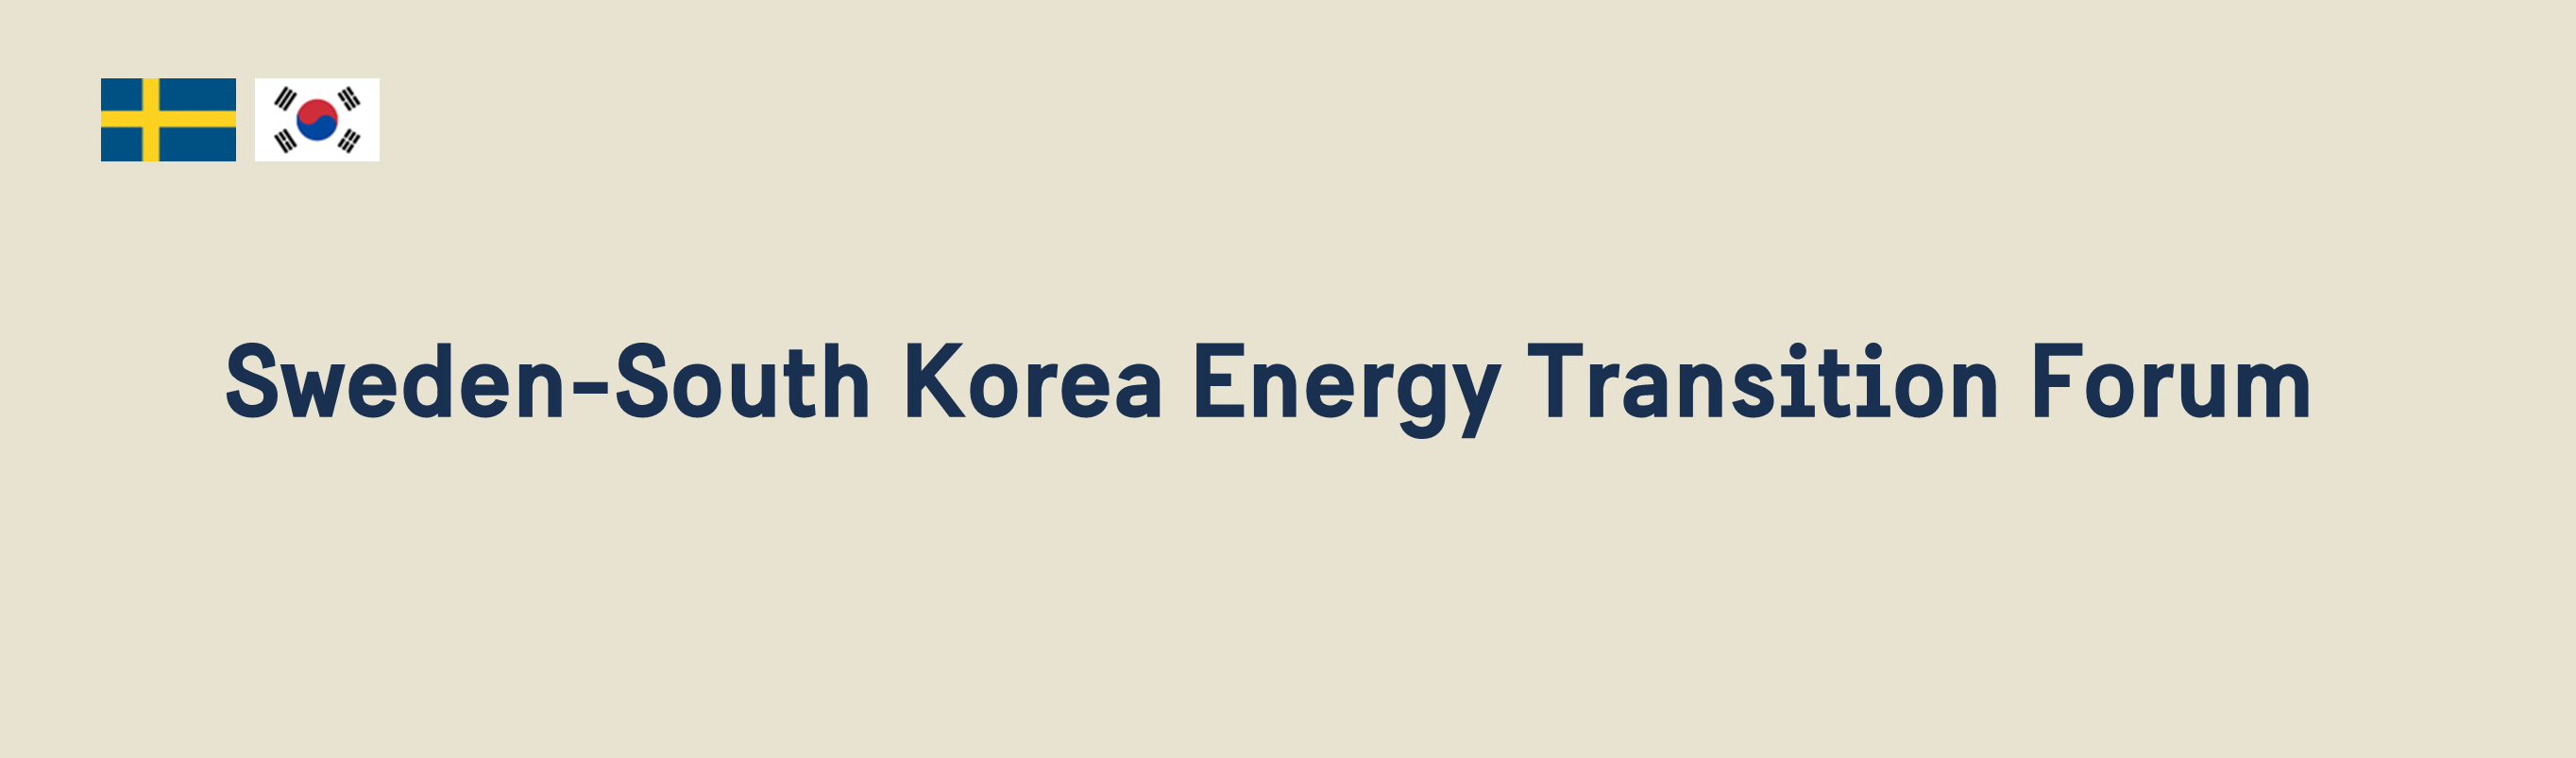 Header image for Sweden-South Korea Energy Transition Forum